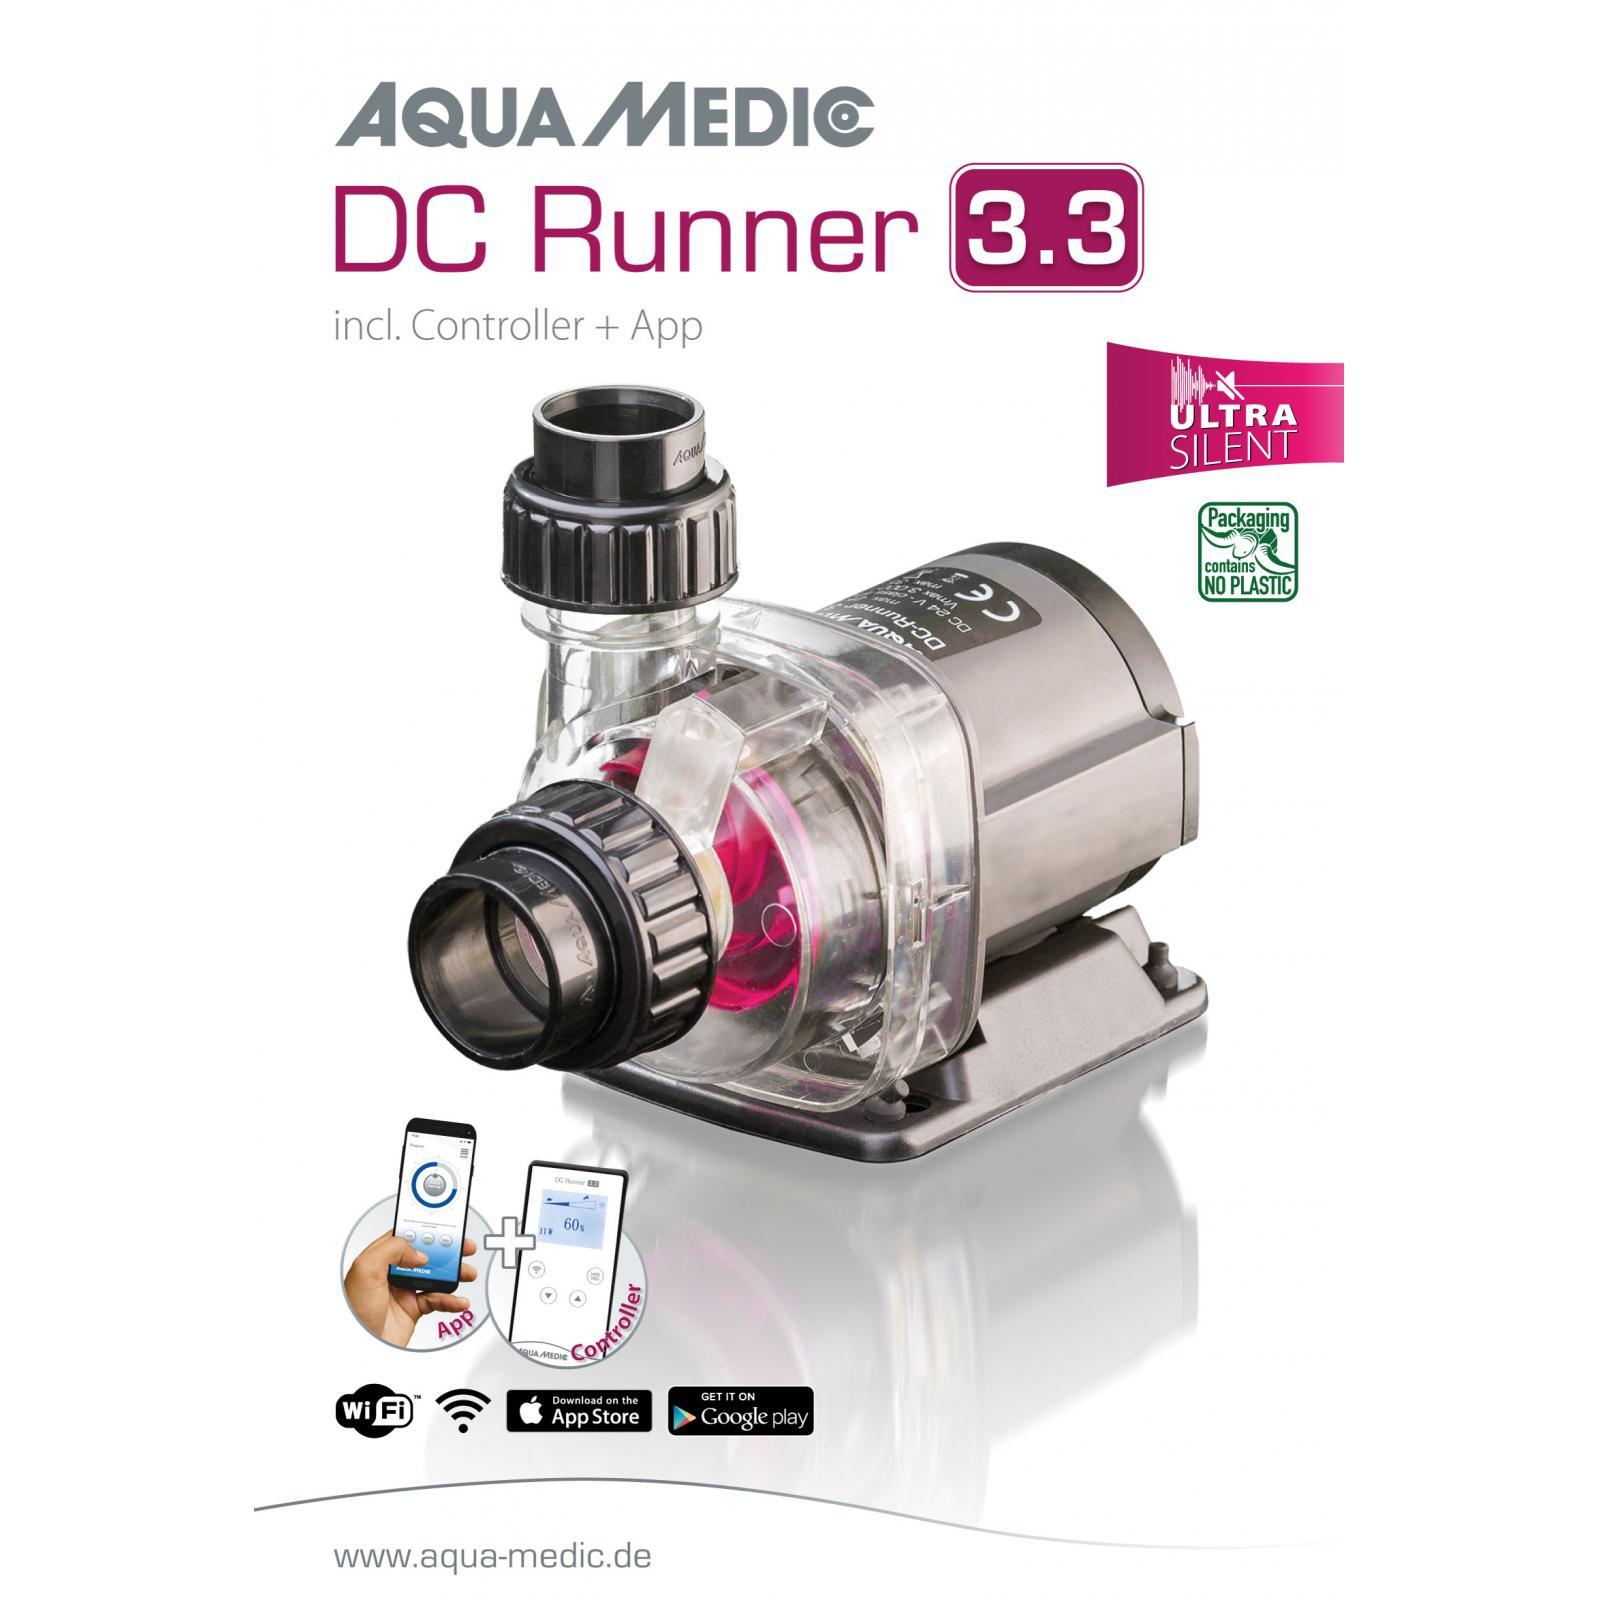 Универсальный насос для аквариума Aqua Medic DC Runner 3.3